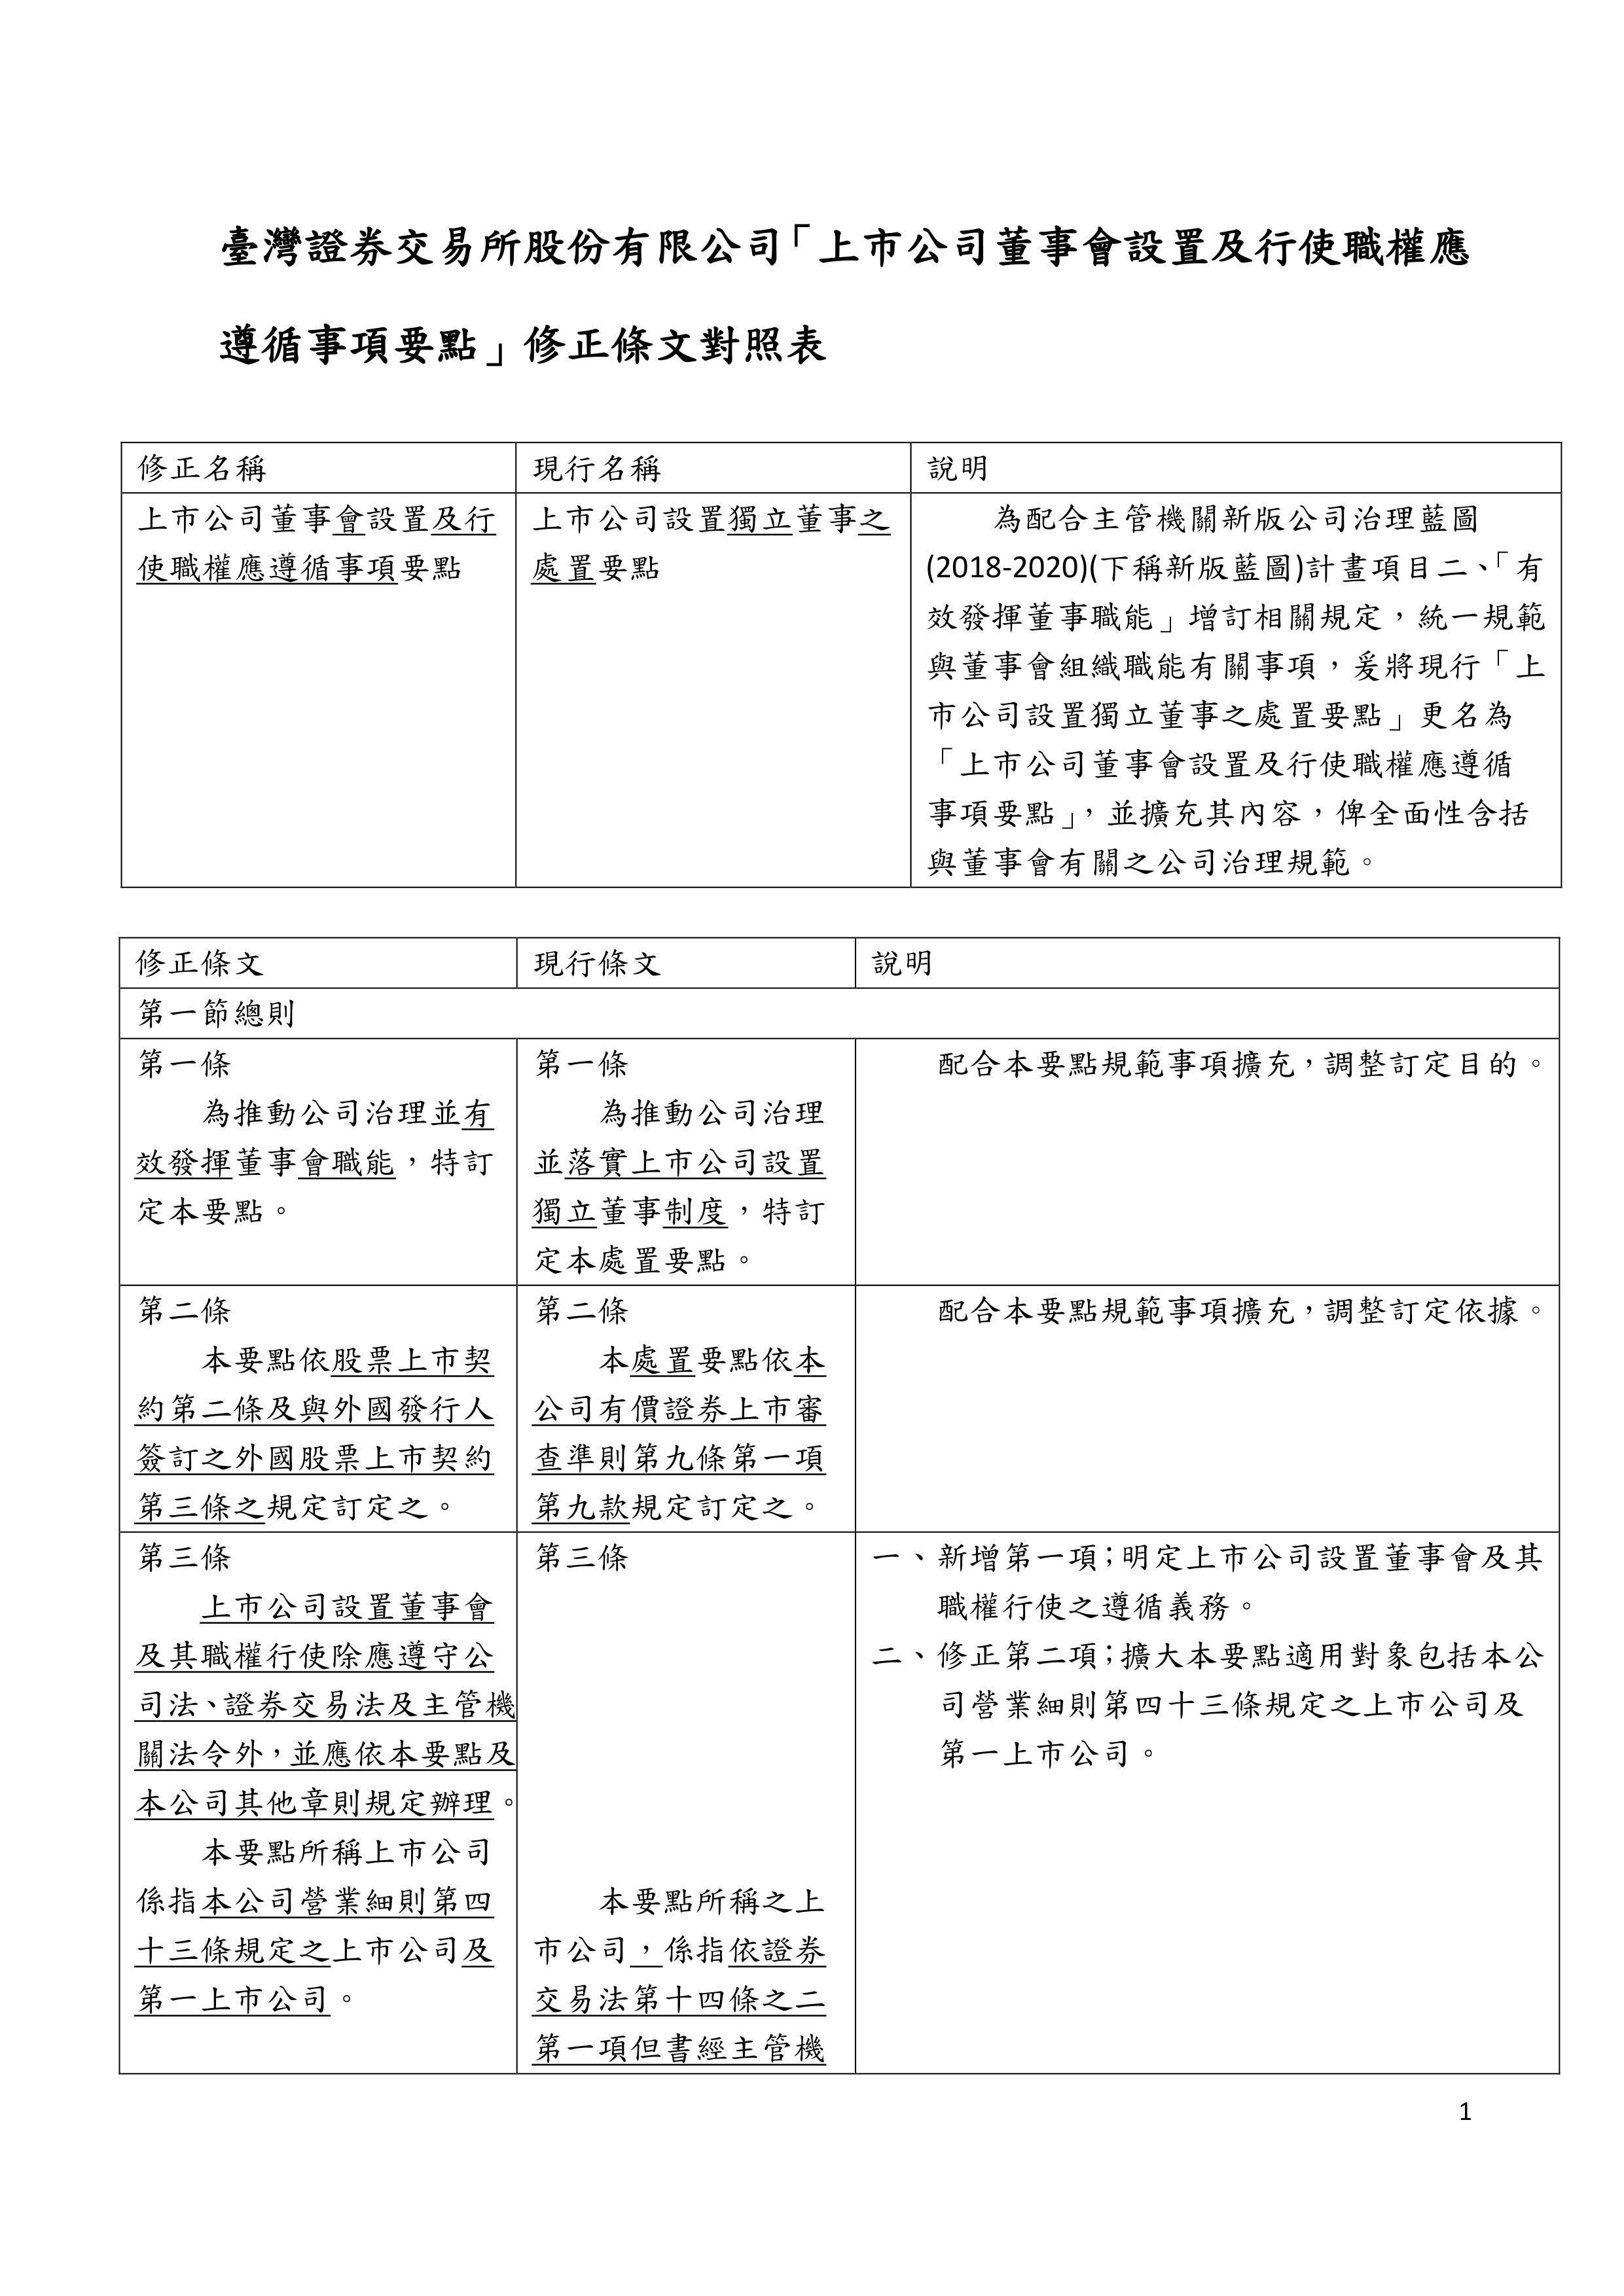 上市公司董事會設置及行使職權應遵循事項要點 修正條文對照表 中華獨立董事協會